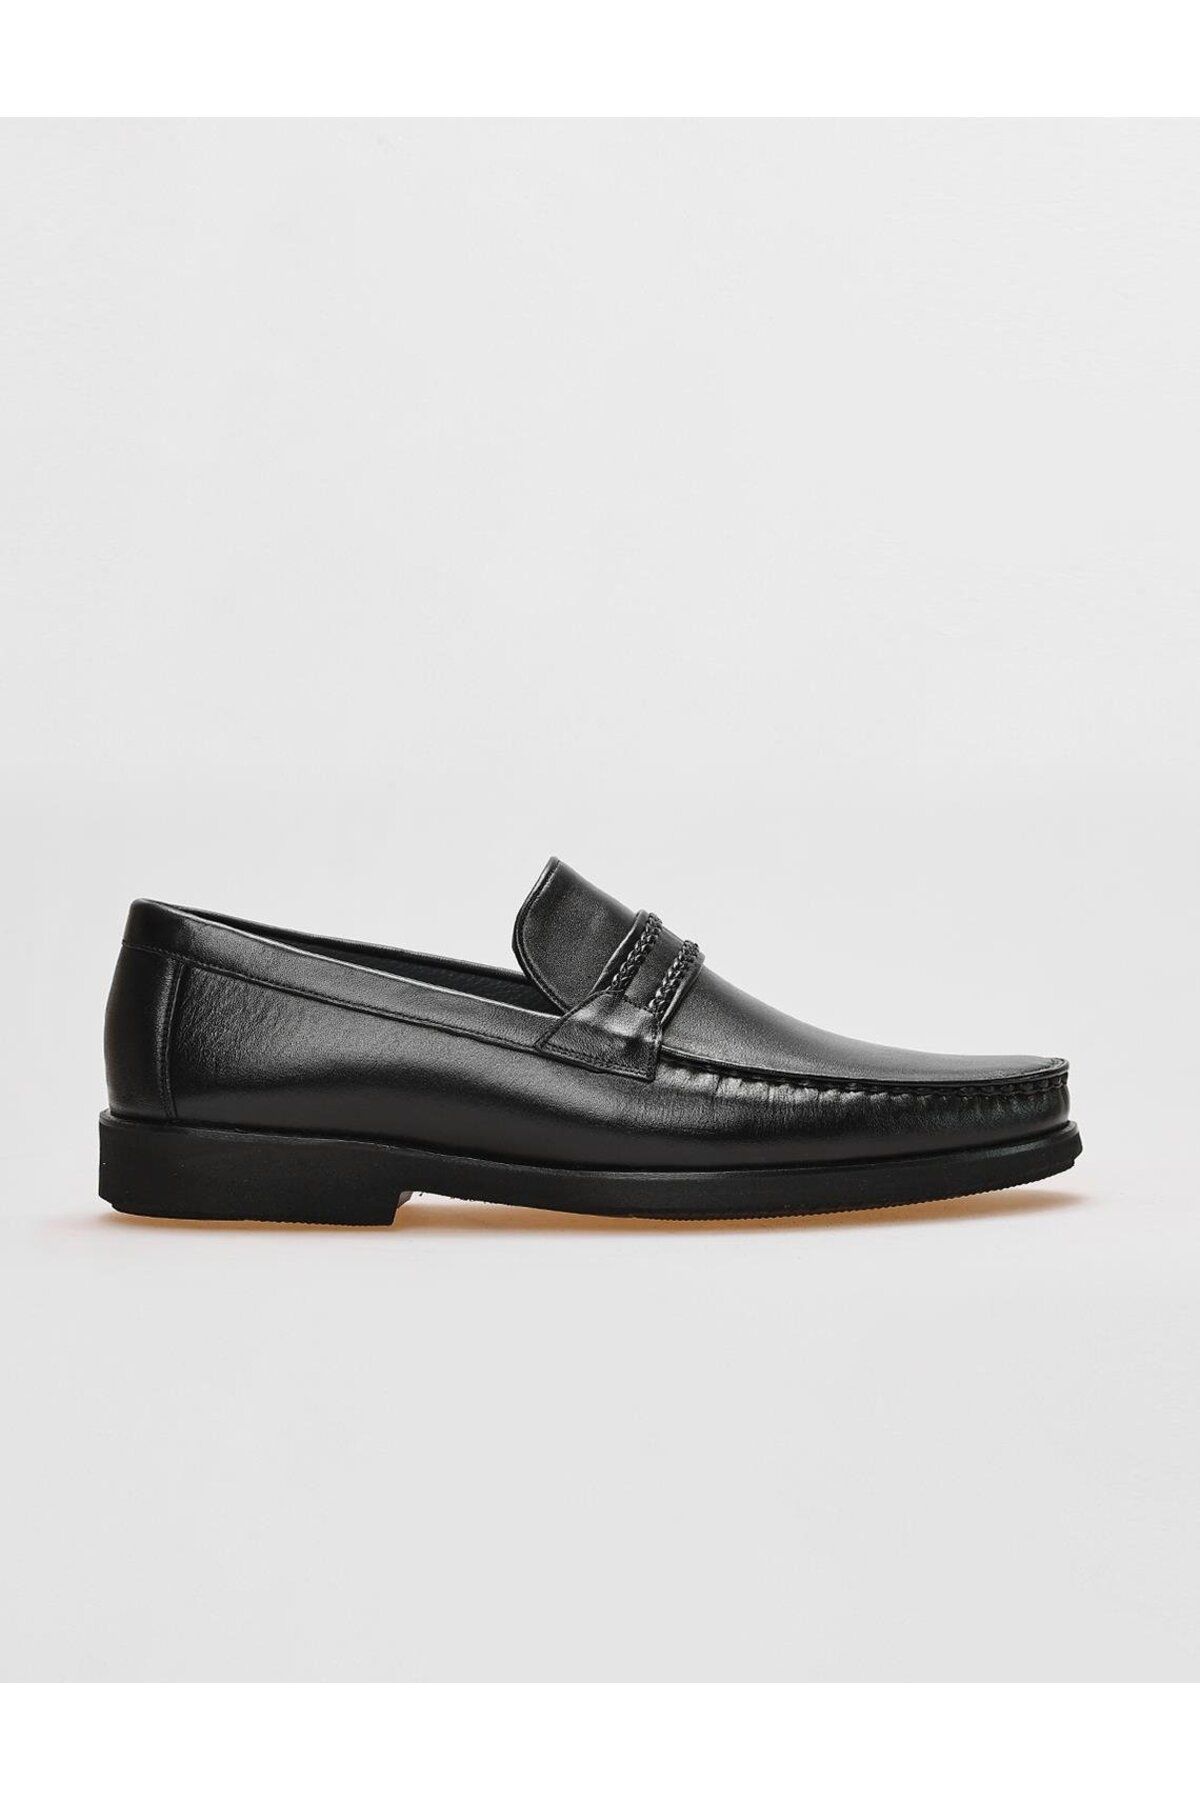 Cabani Hakiki Deri Siyah Kemer Detaylı Erkek Klasik Ayakkabı